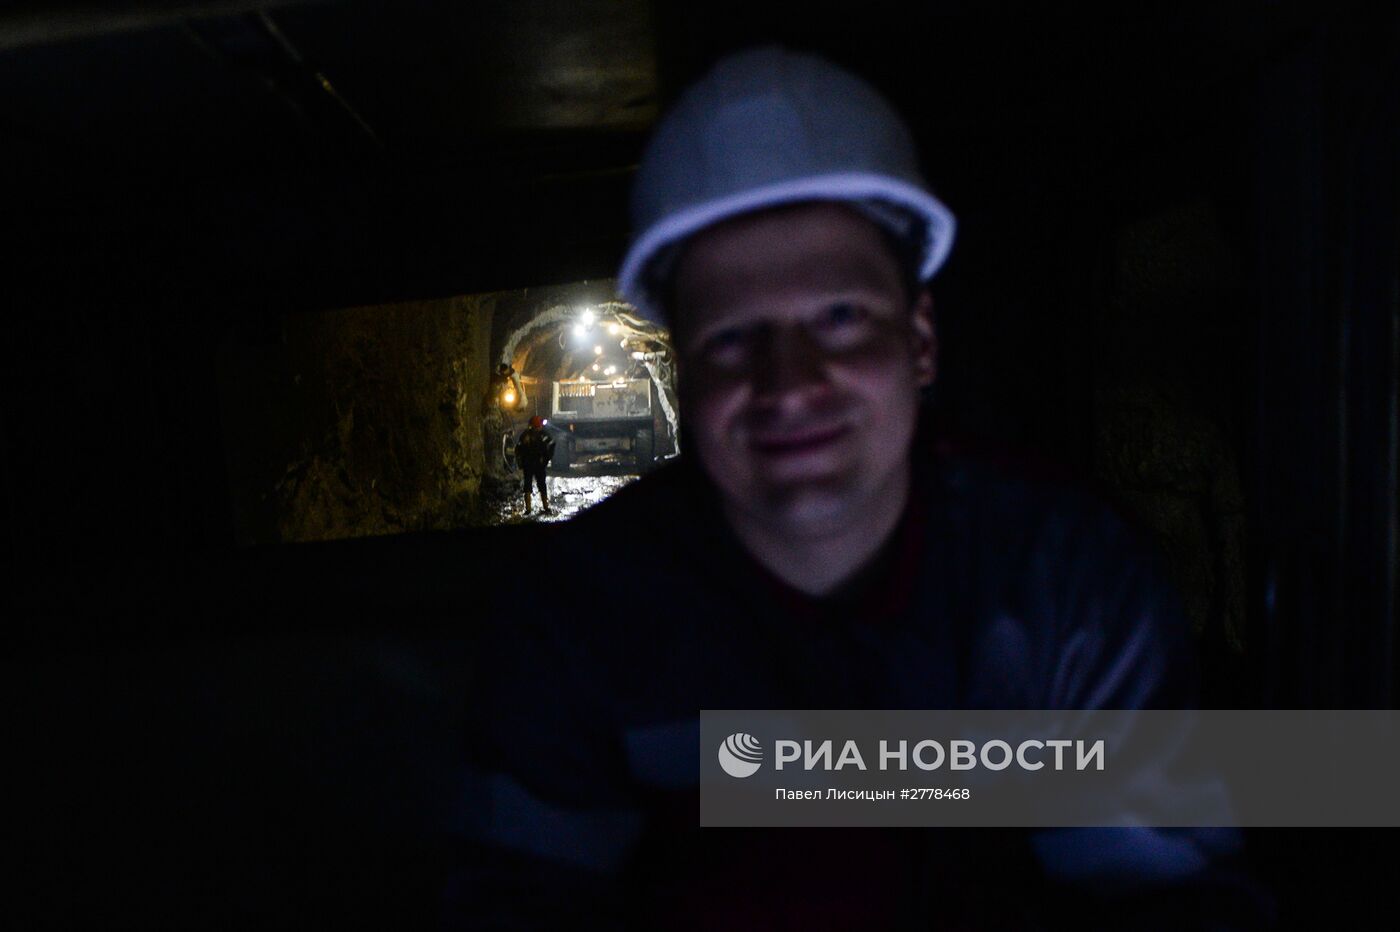 Добыча медной руды на месторождении АО "Сафьяновская медь" в Свердловской области